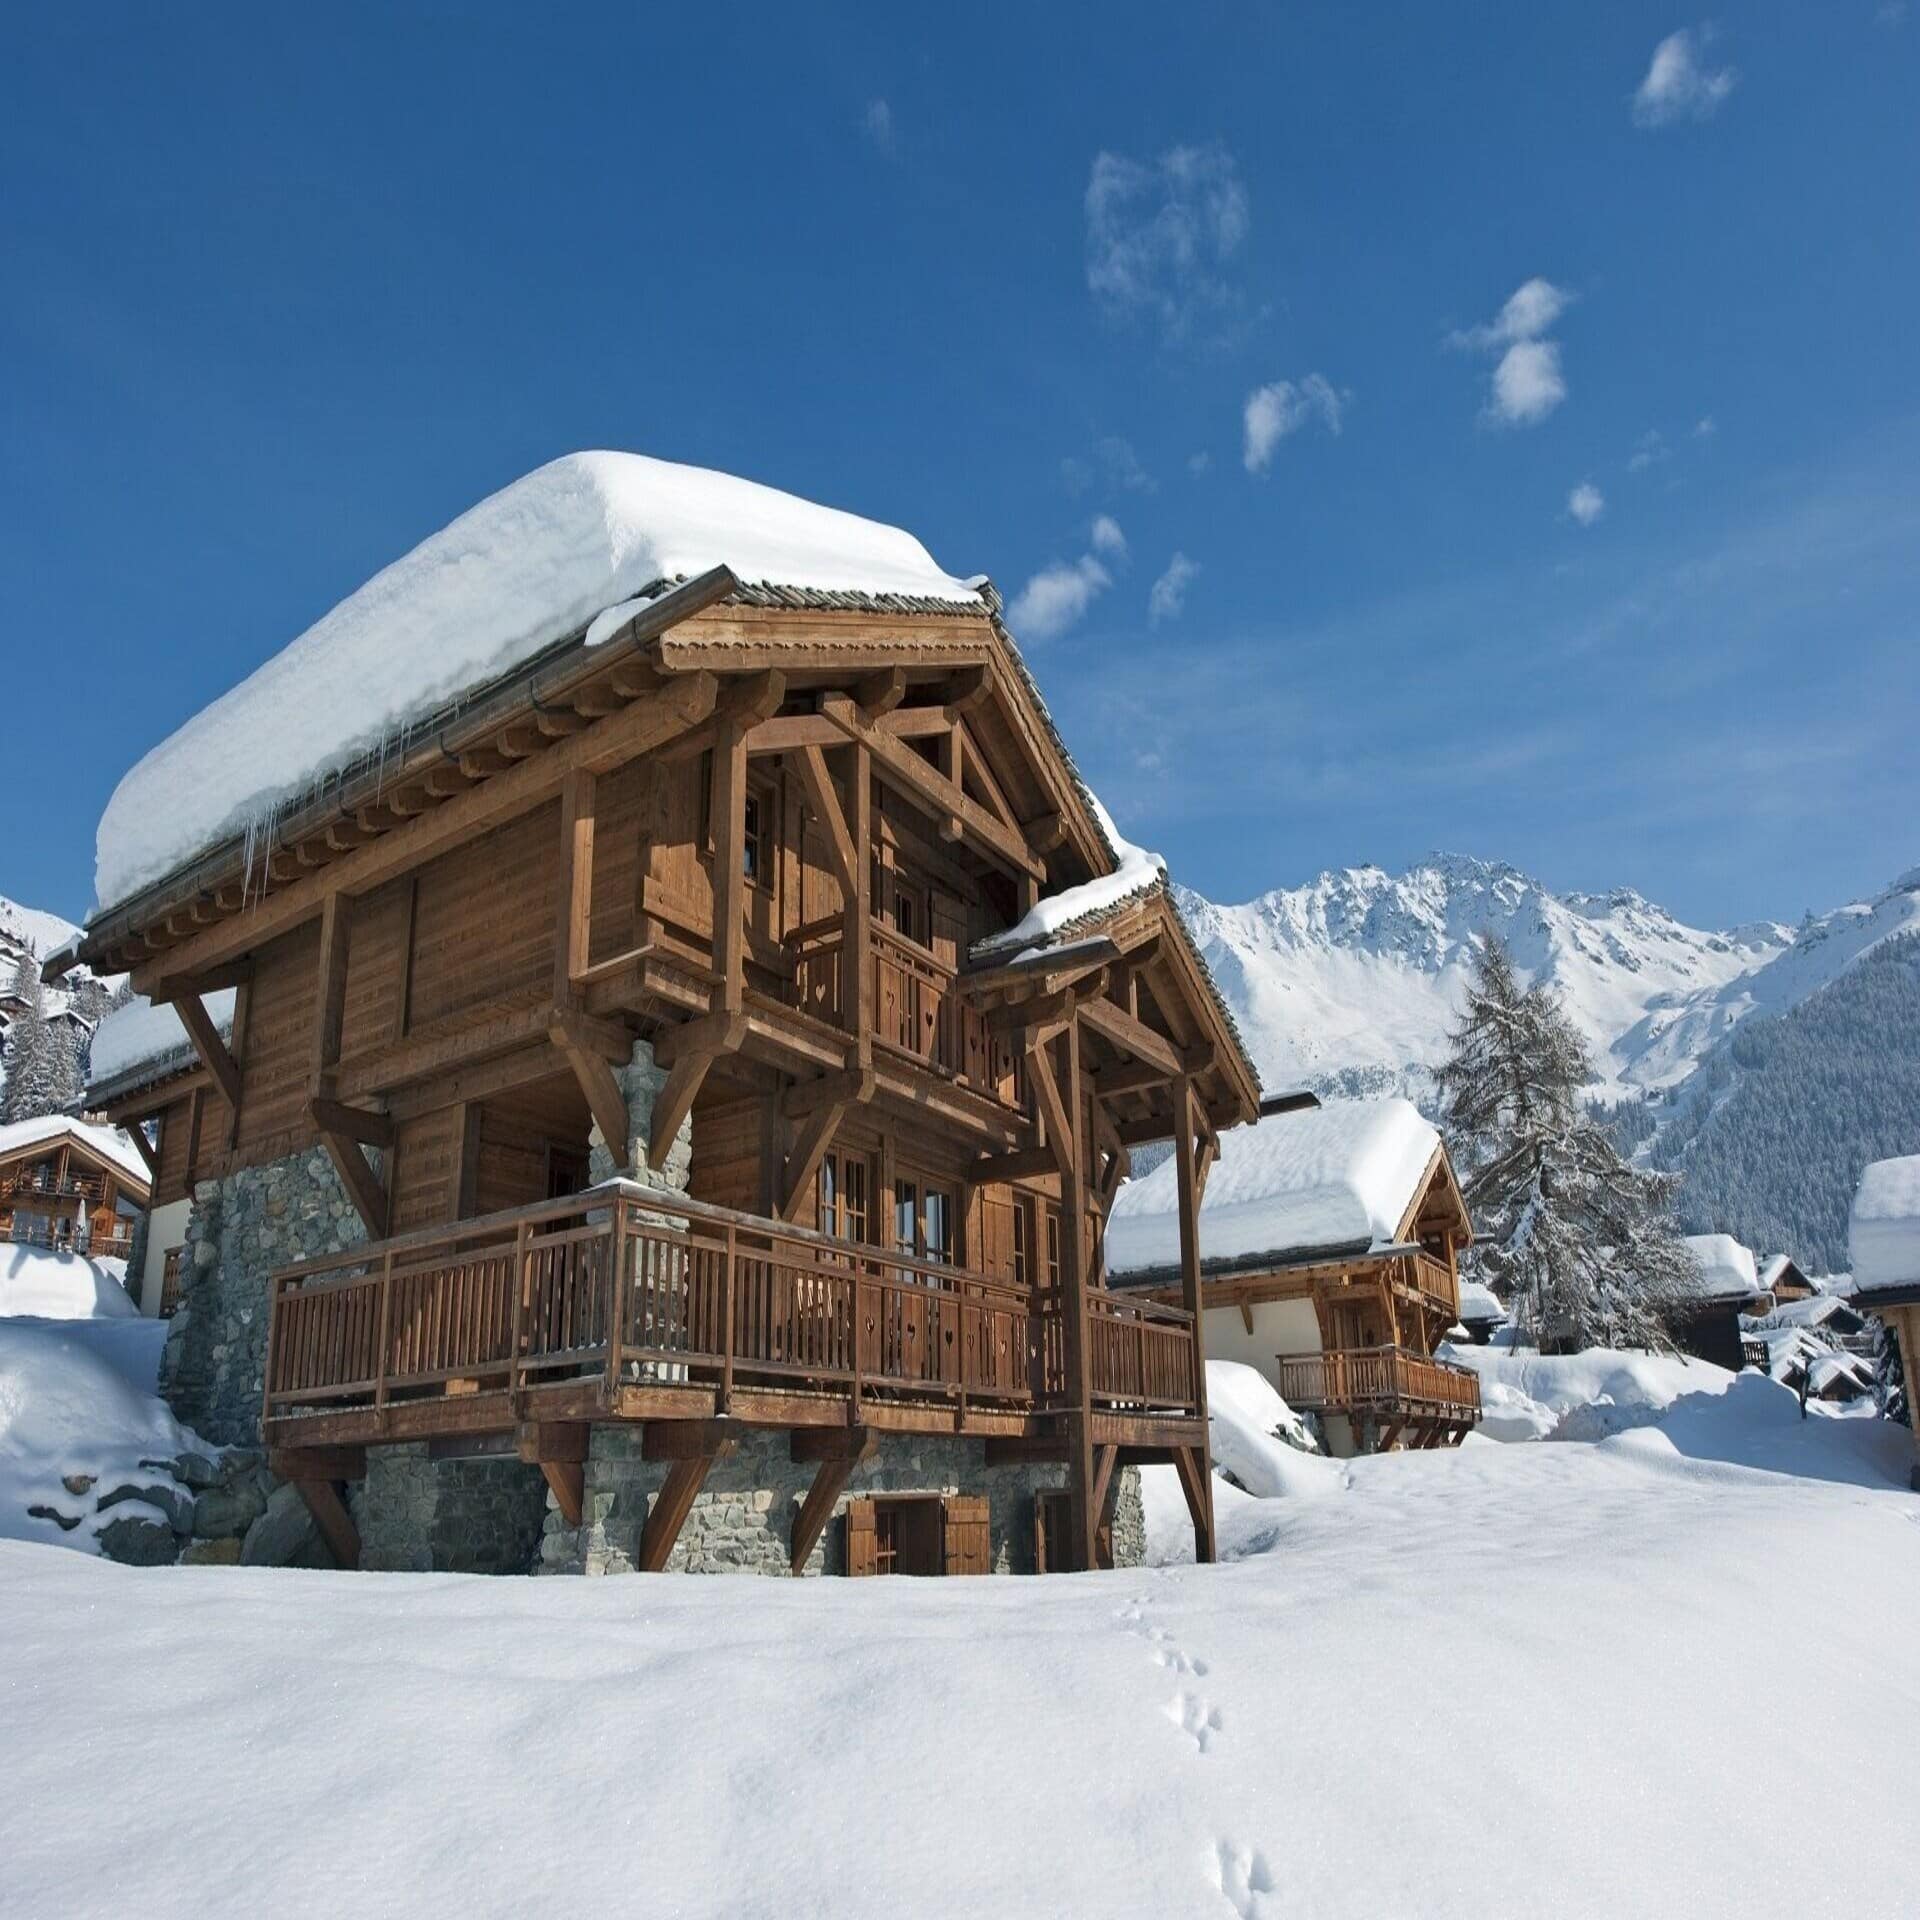 Verschneite Holzhäuser, im Hintergrund die Berge von Verbier.